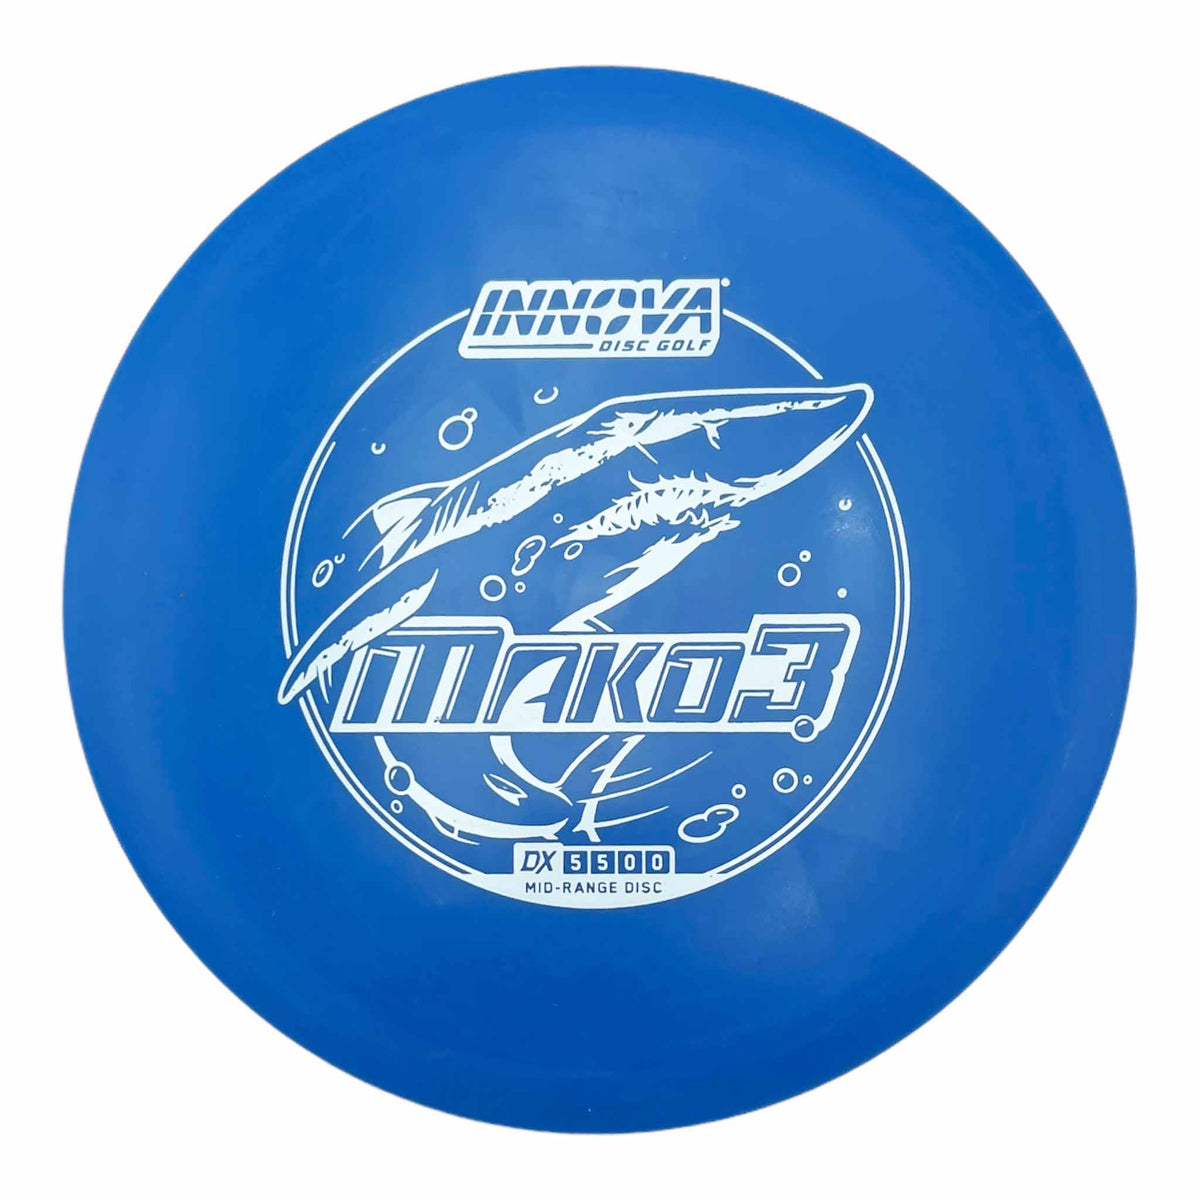 Innova Disc Golf DX Mako3 midrange - Blue / White